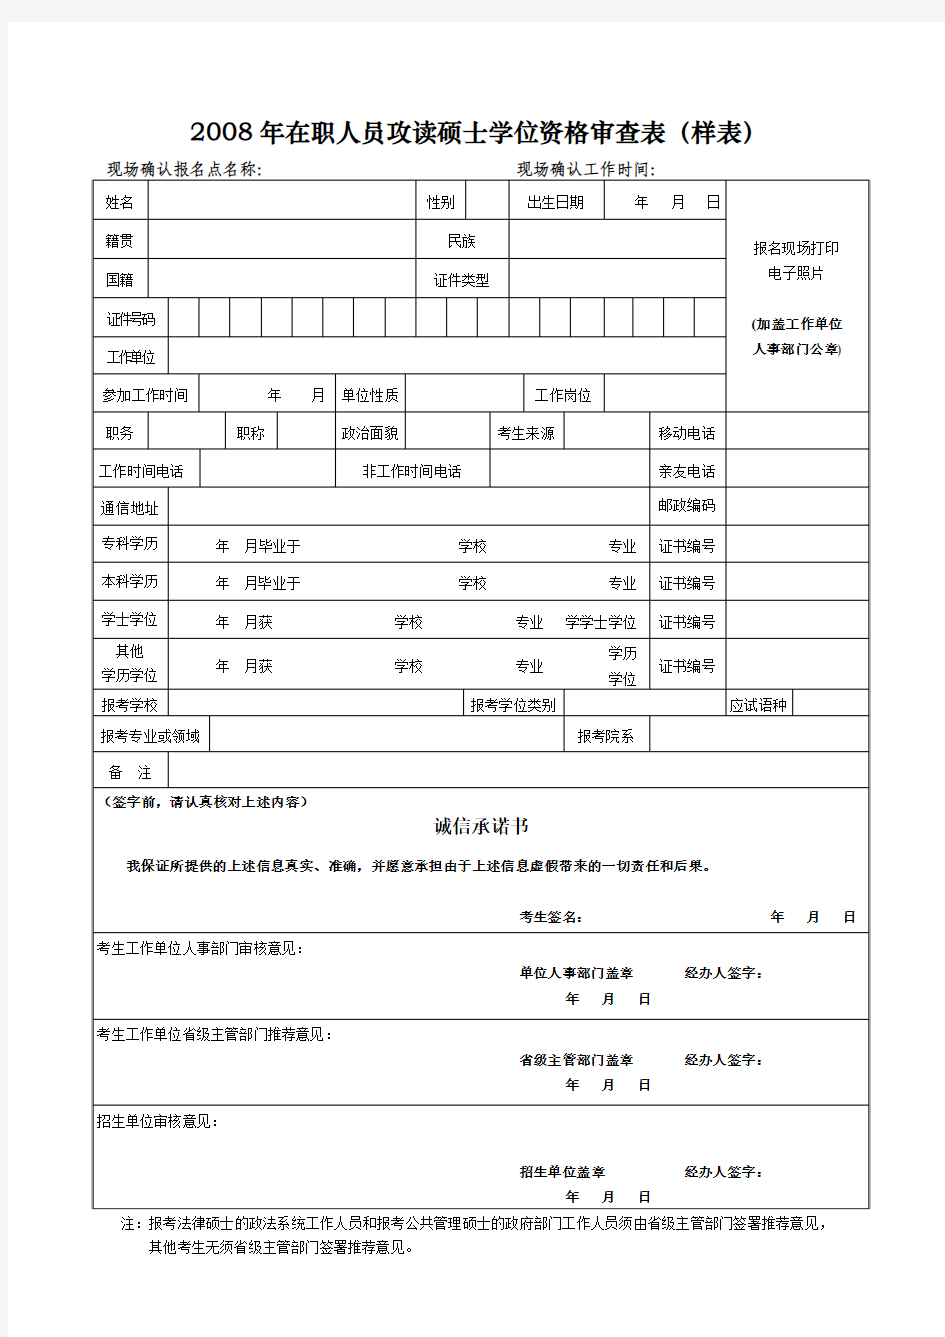 桂林电子工业大学 28在职人员攻读硕士学位资格审查表(样表)